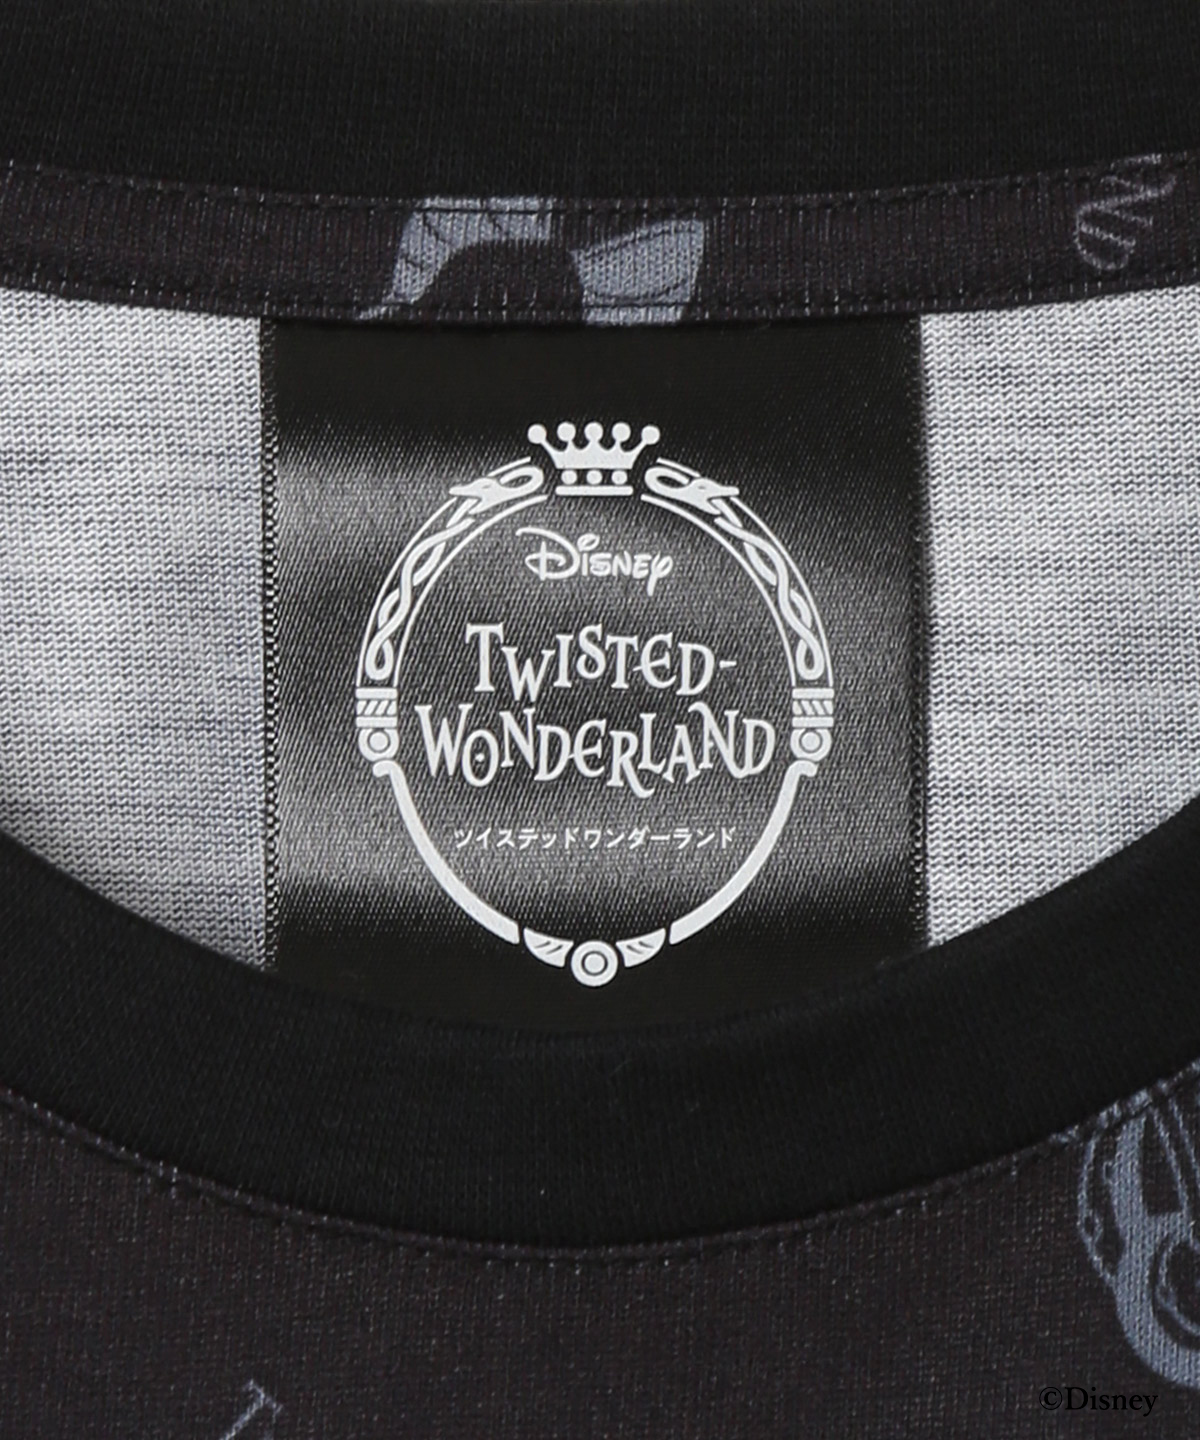 『ディズニー ツイステッドワンダーランド』バッグコレクション オリジナルデザインT シャツ